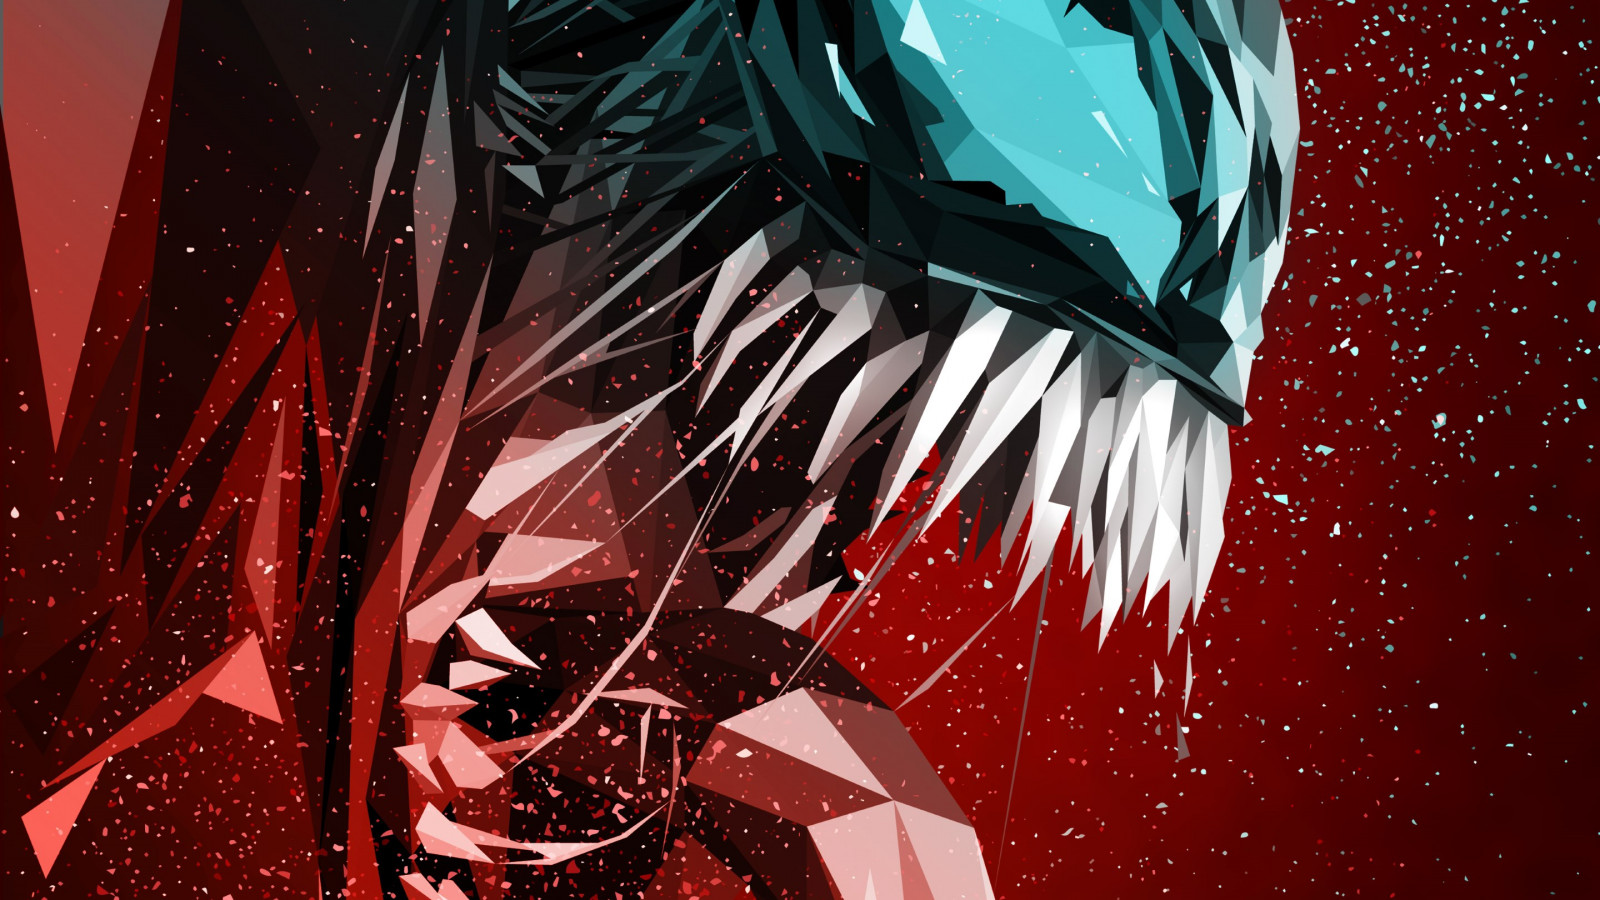 Venom digital art poster wallpaper 1600x900